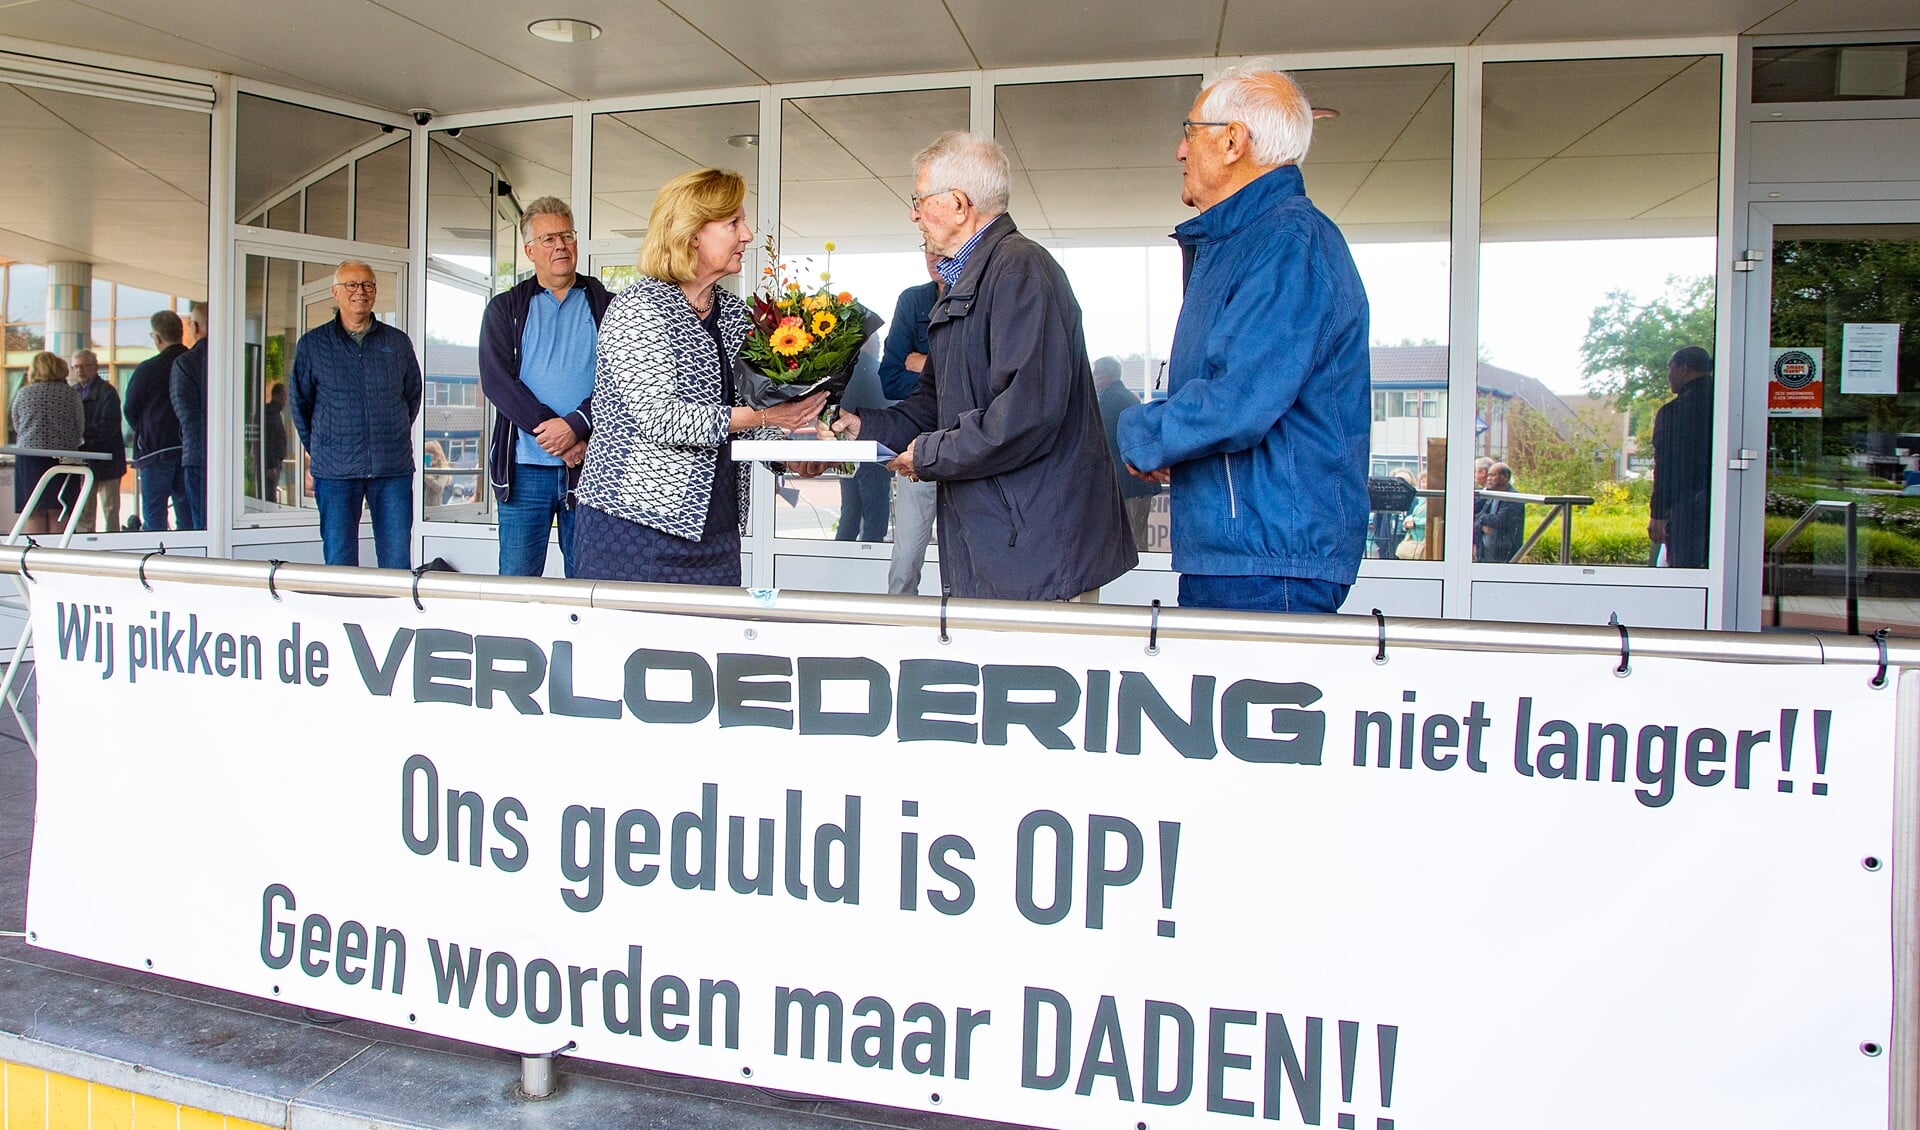 Piet Boor (86) en Aart Veerman (92) bieden de petitie aan wethouder Verbeek aan